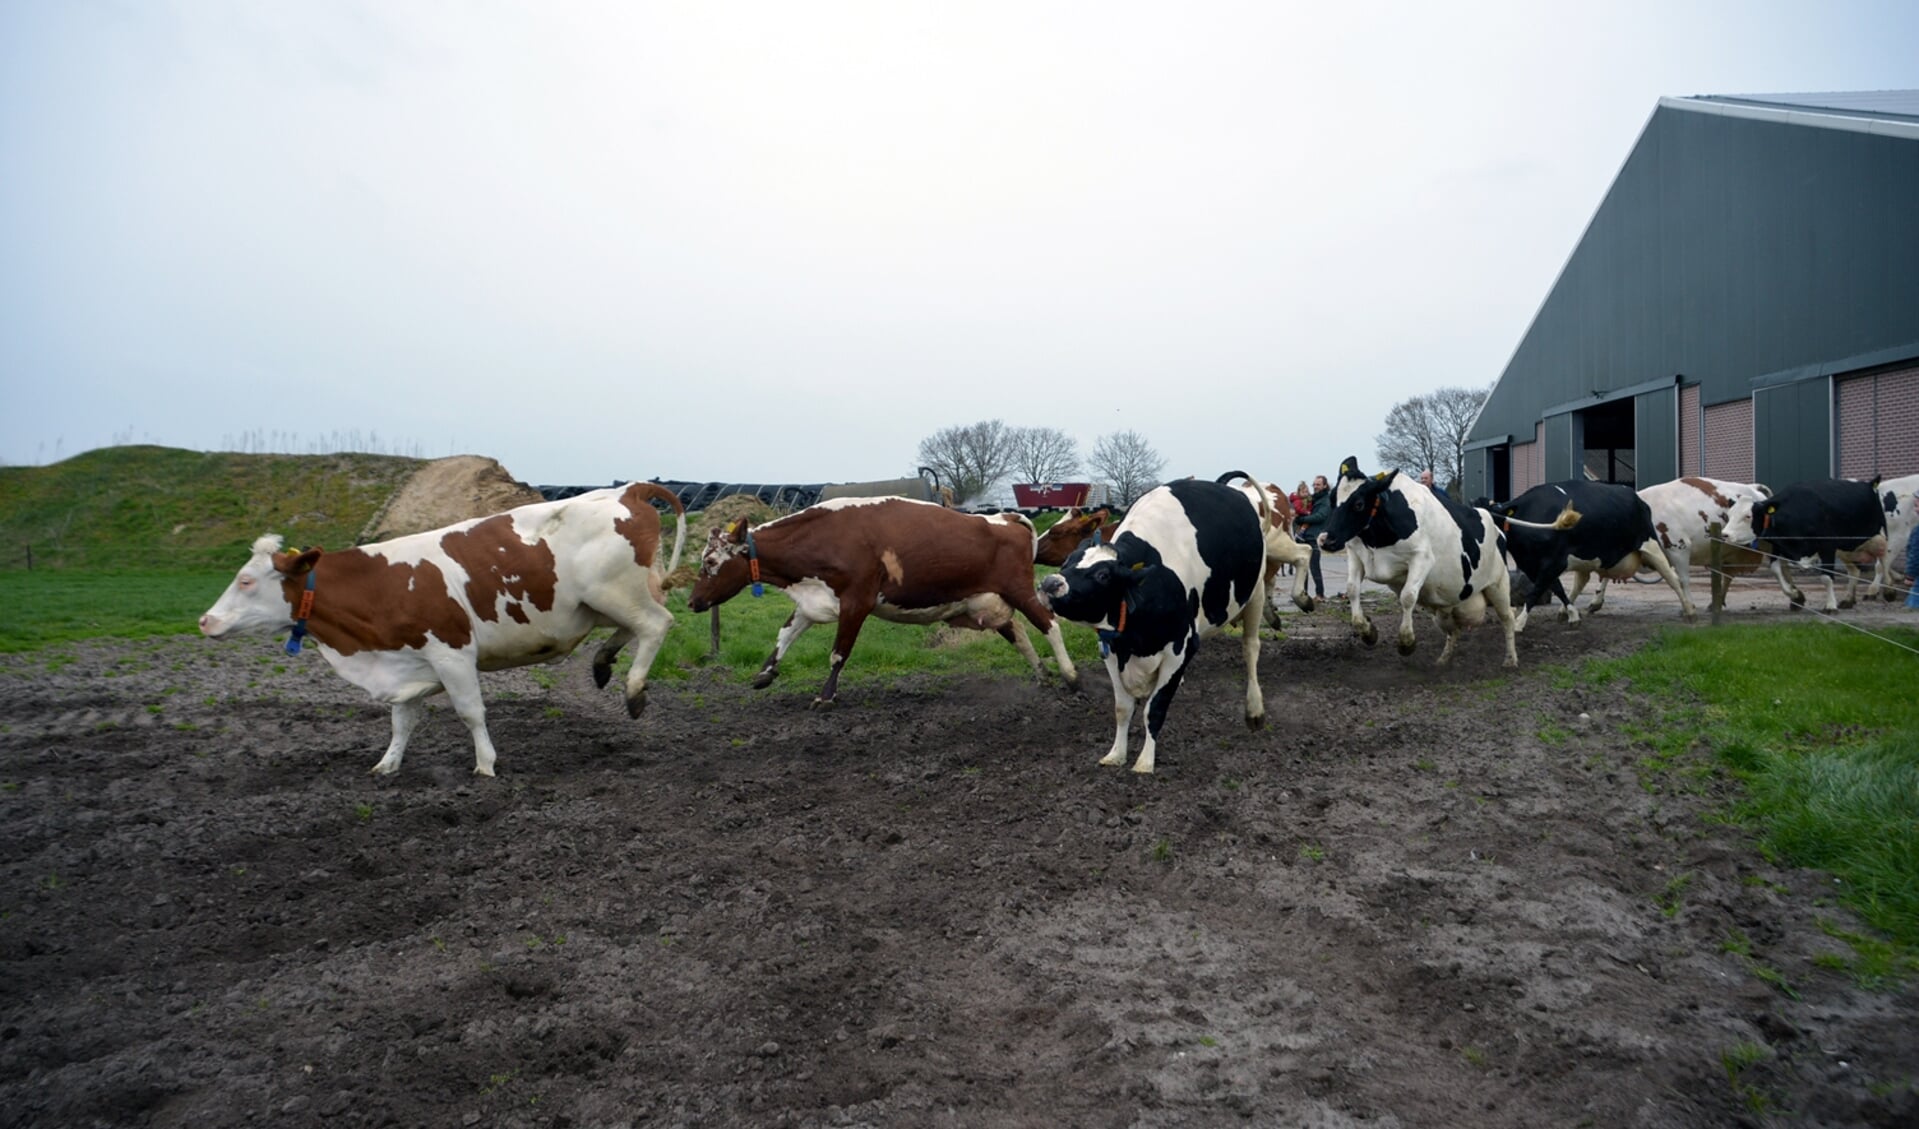 Er is de afgelopen veel veranderd, waaronder veehouderijen die zich sterk ontwikkeld hebben. Op deze foto koeien van een veehouderij in Odiliapeel.